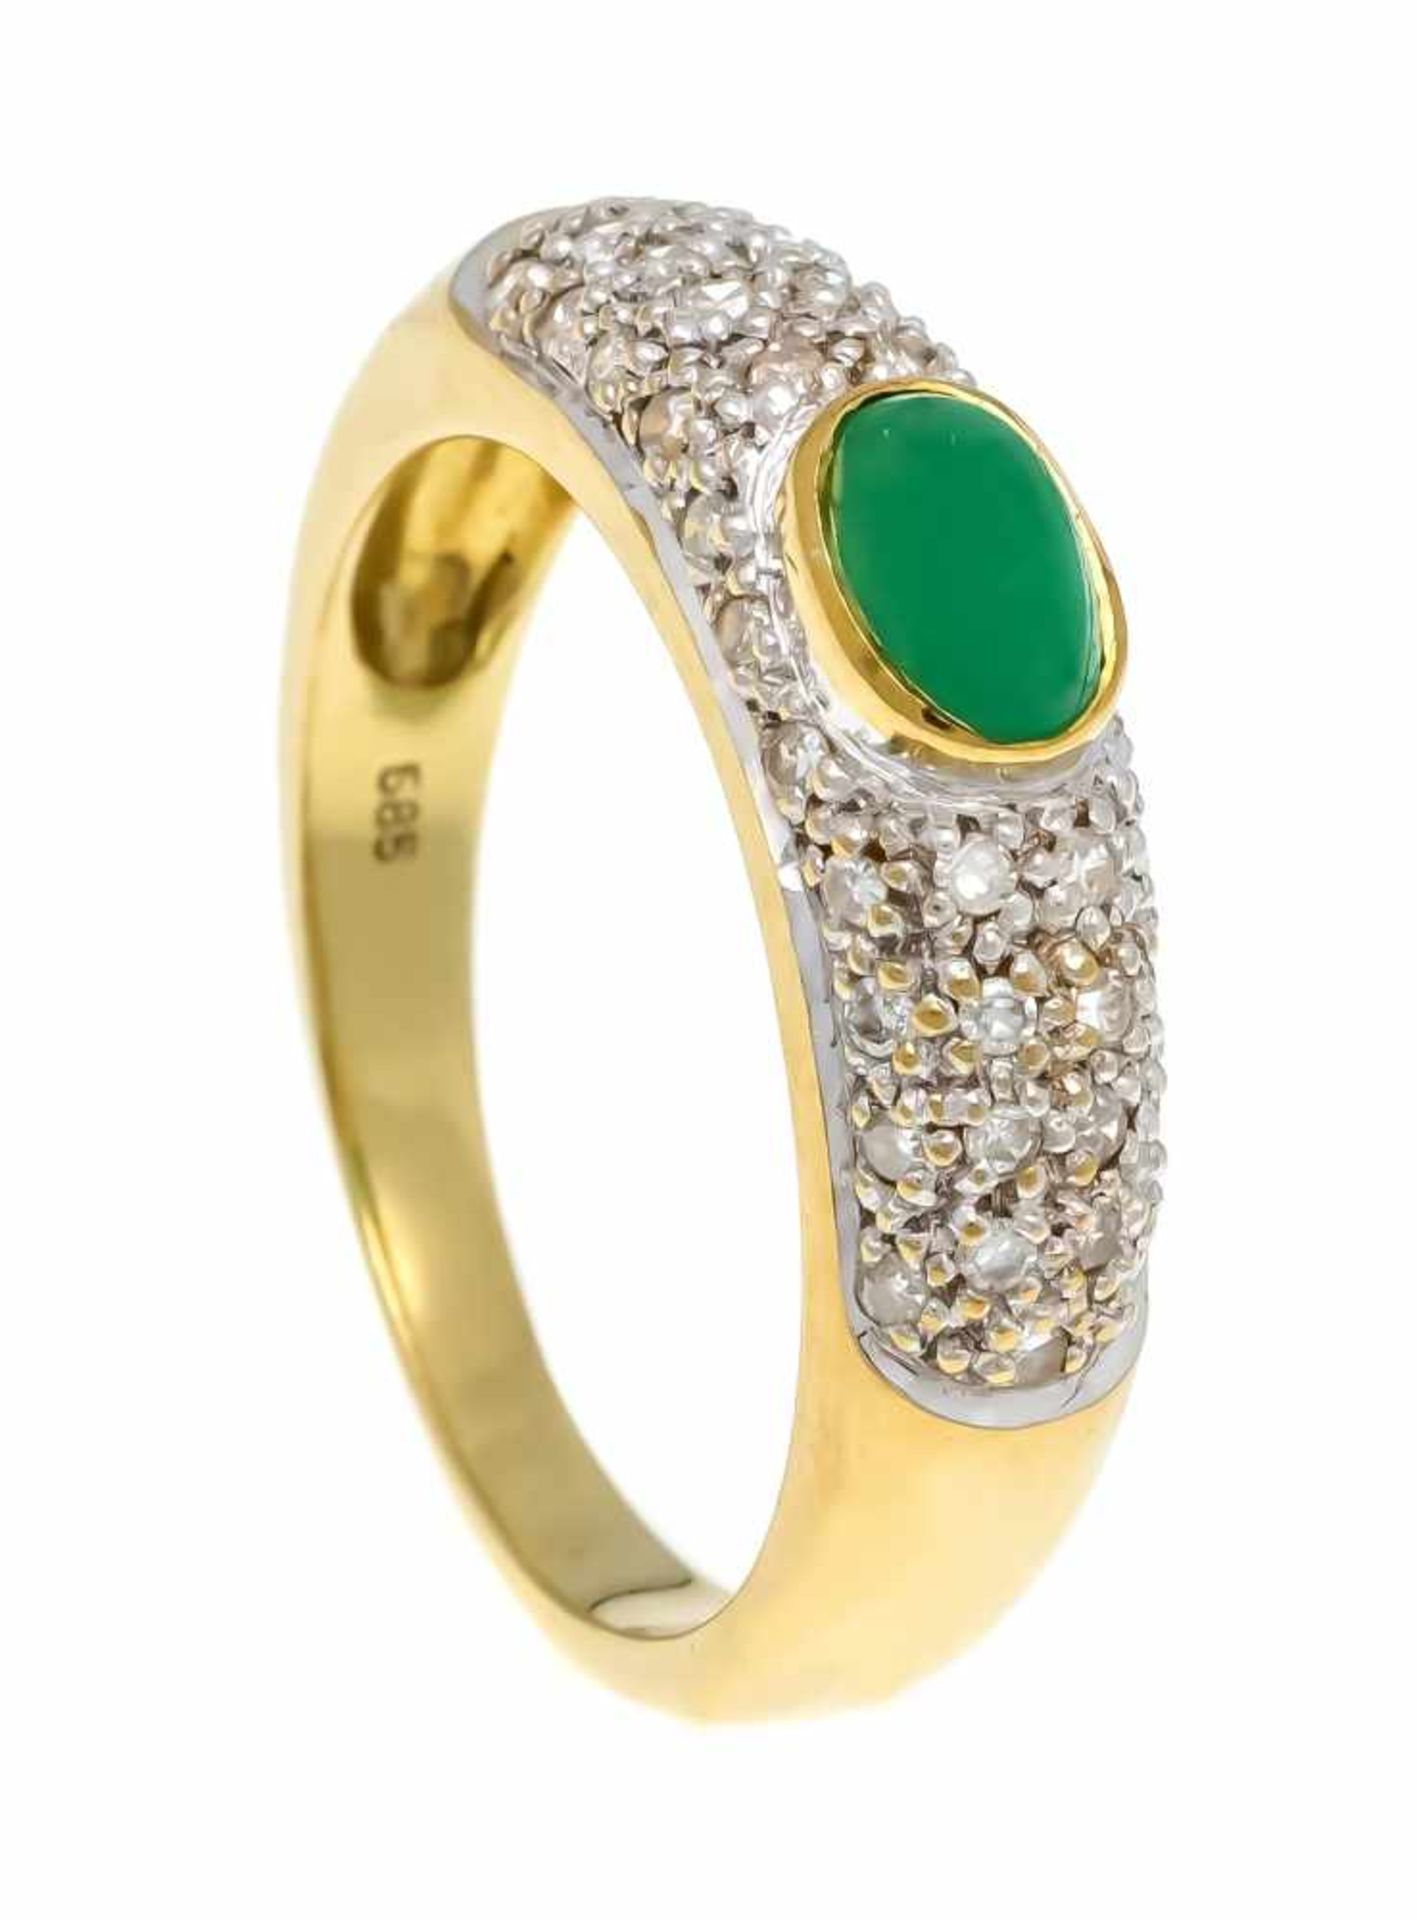 Smaragd-Diamant-Ring GG/WG 585/000 mit einem ovalen Smaragd-Cabochon 6 x 3,7 mm und